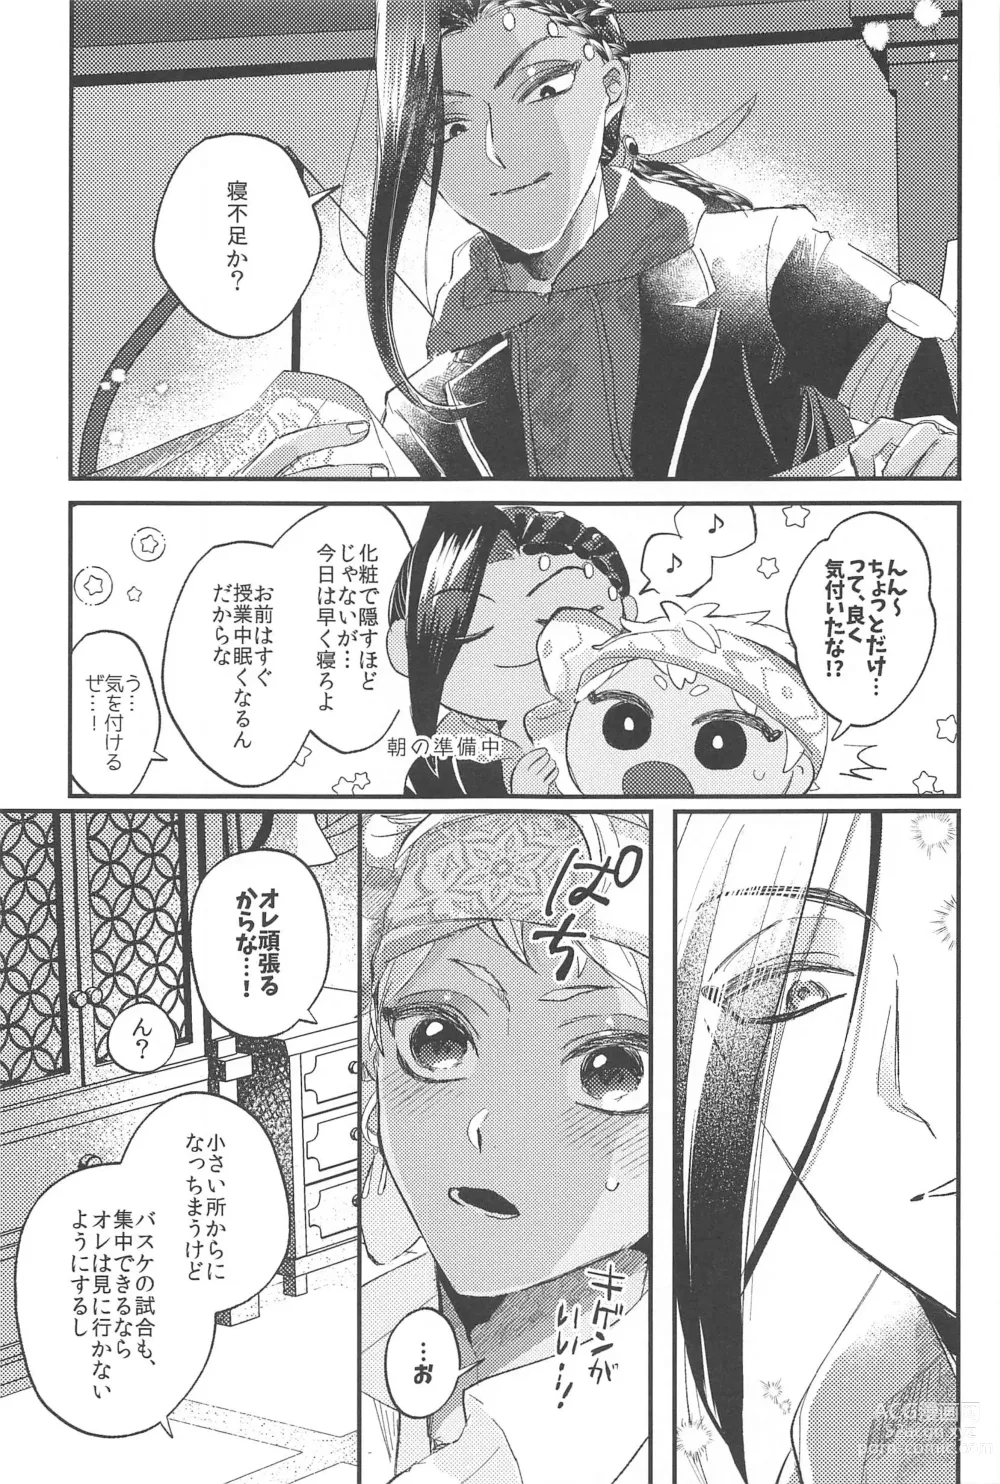 Page 24 of doujinshi Kantan dakara Muzukashii